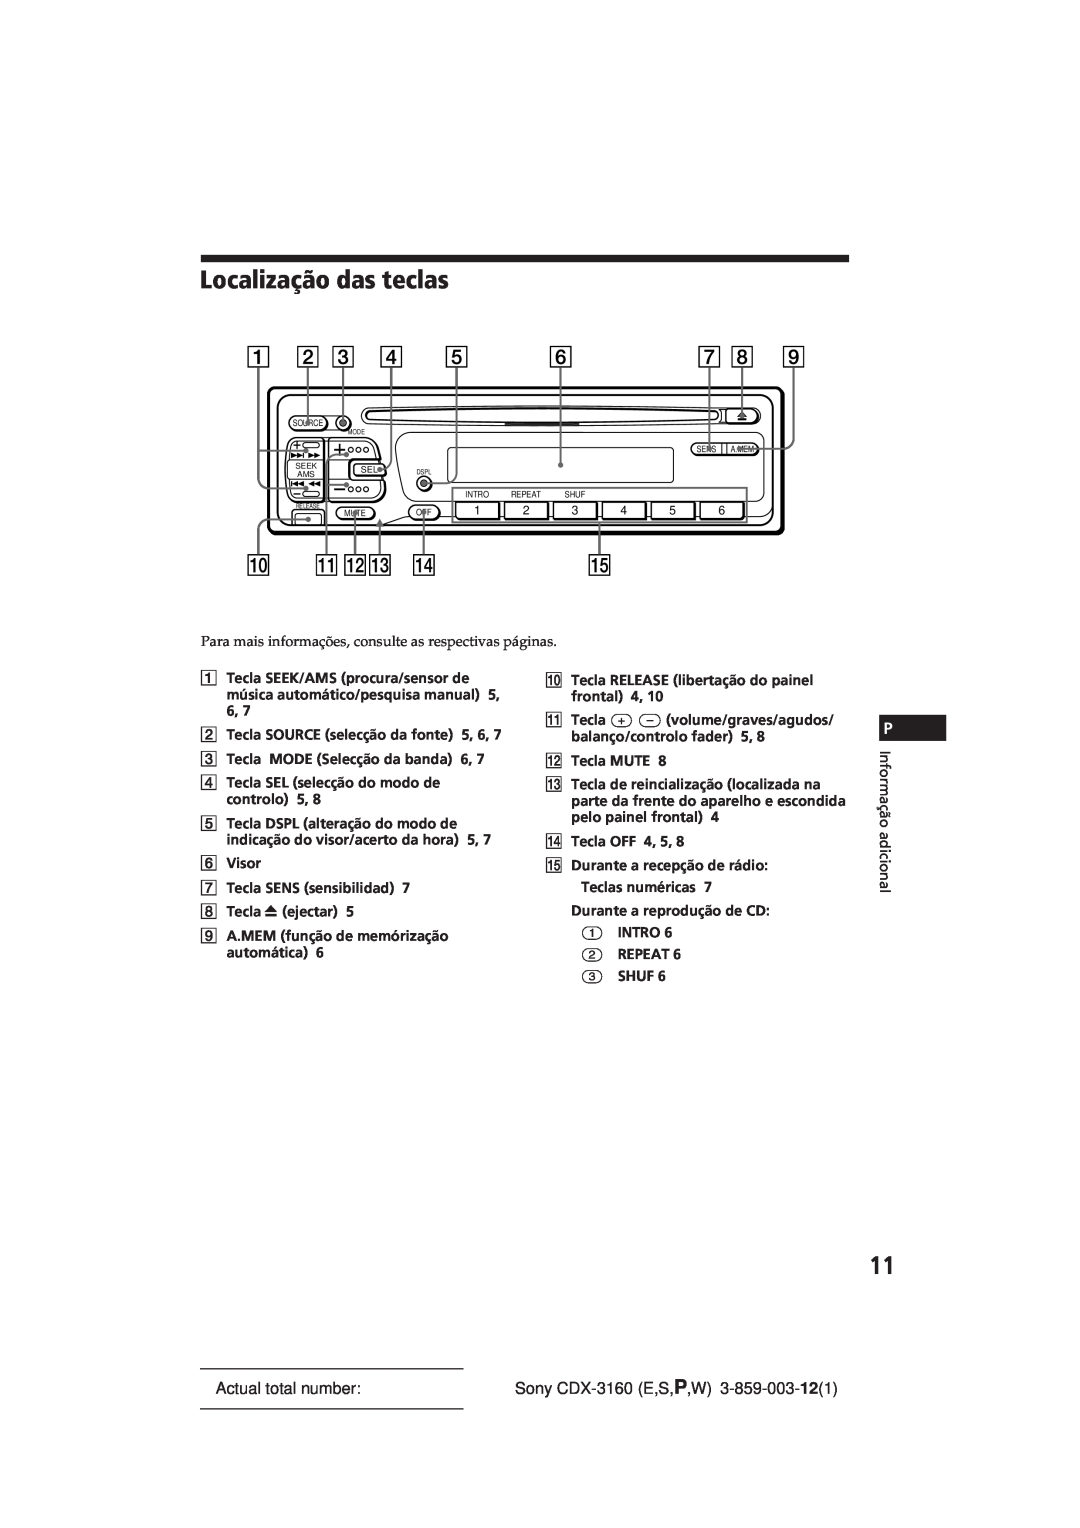 Sony manual Localização das teclas, Actual total number, Sony CDX-3160E,S,P,W 